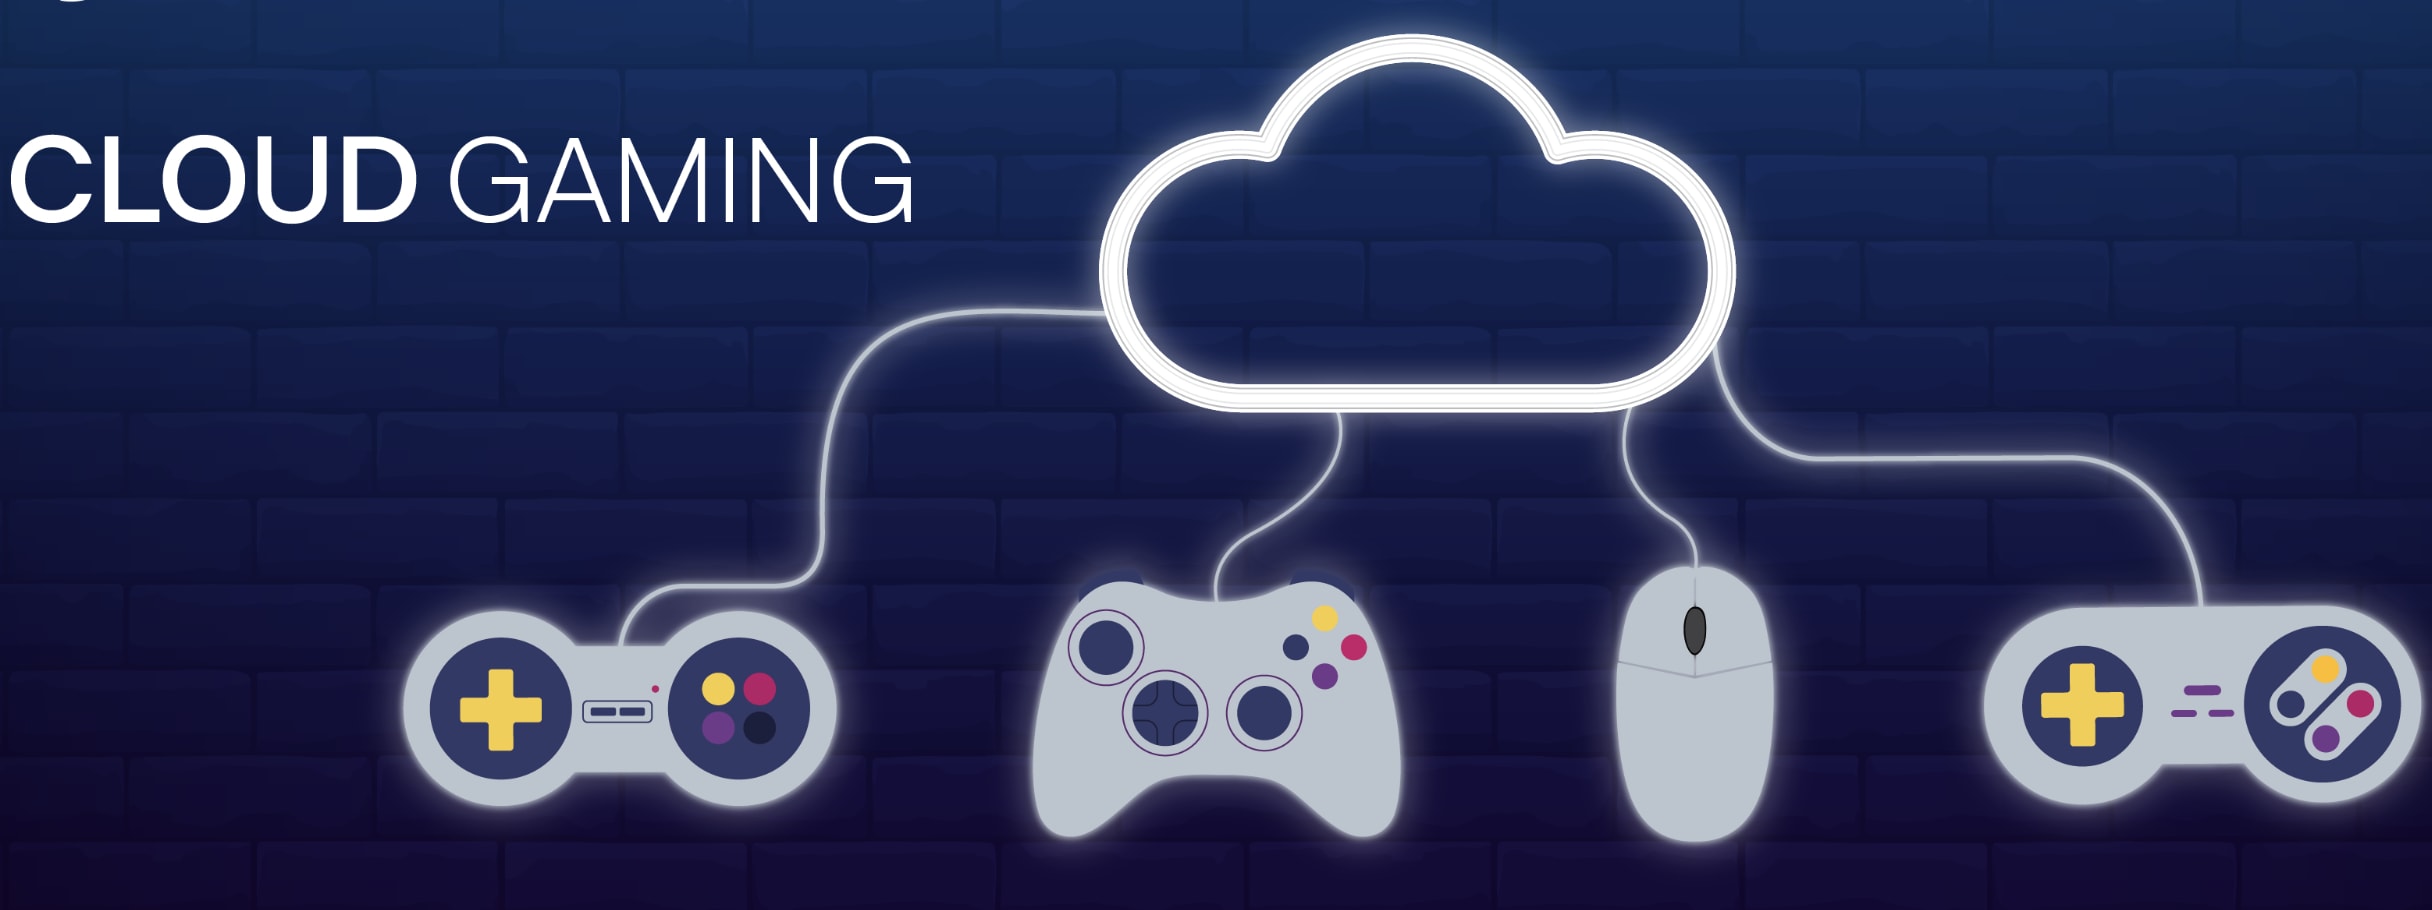 Cloud Gaming Platform